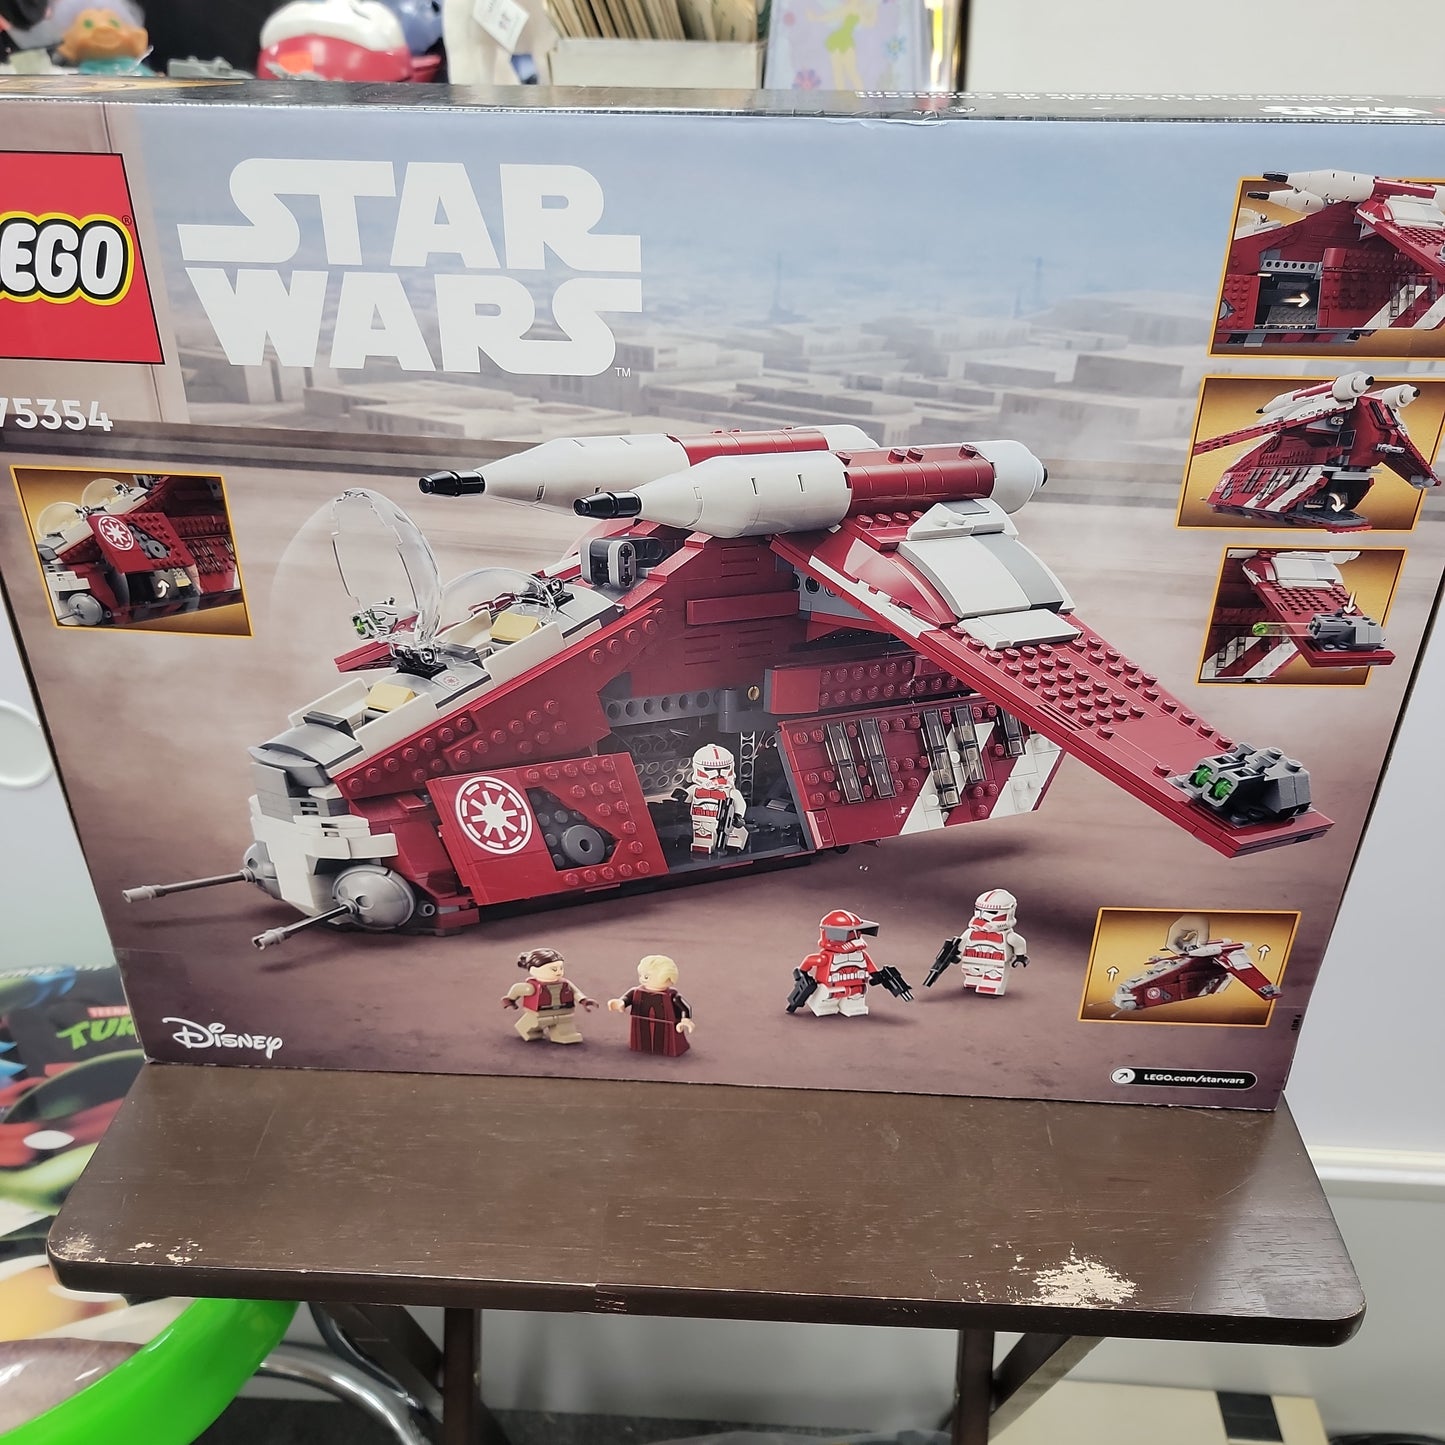 Star Wars Coruscant Guard Gunship Lego Set